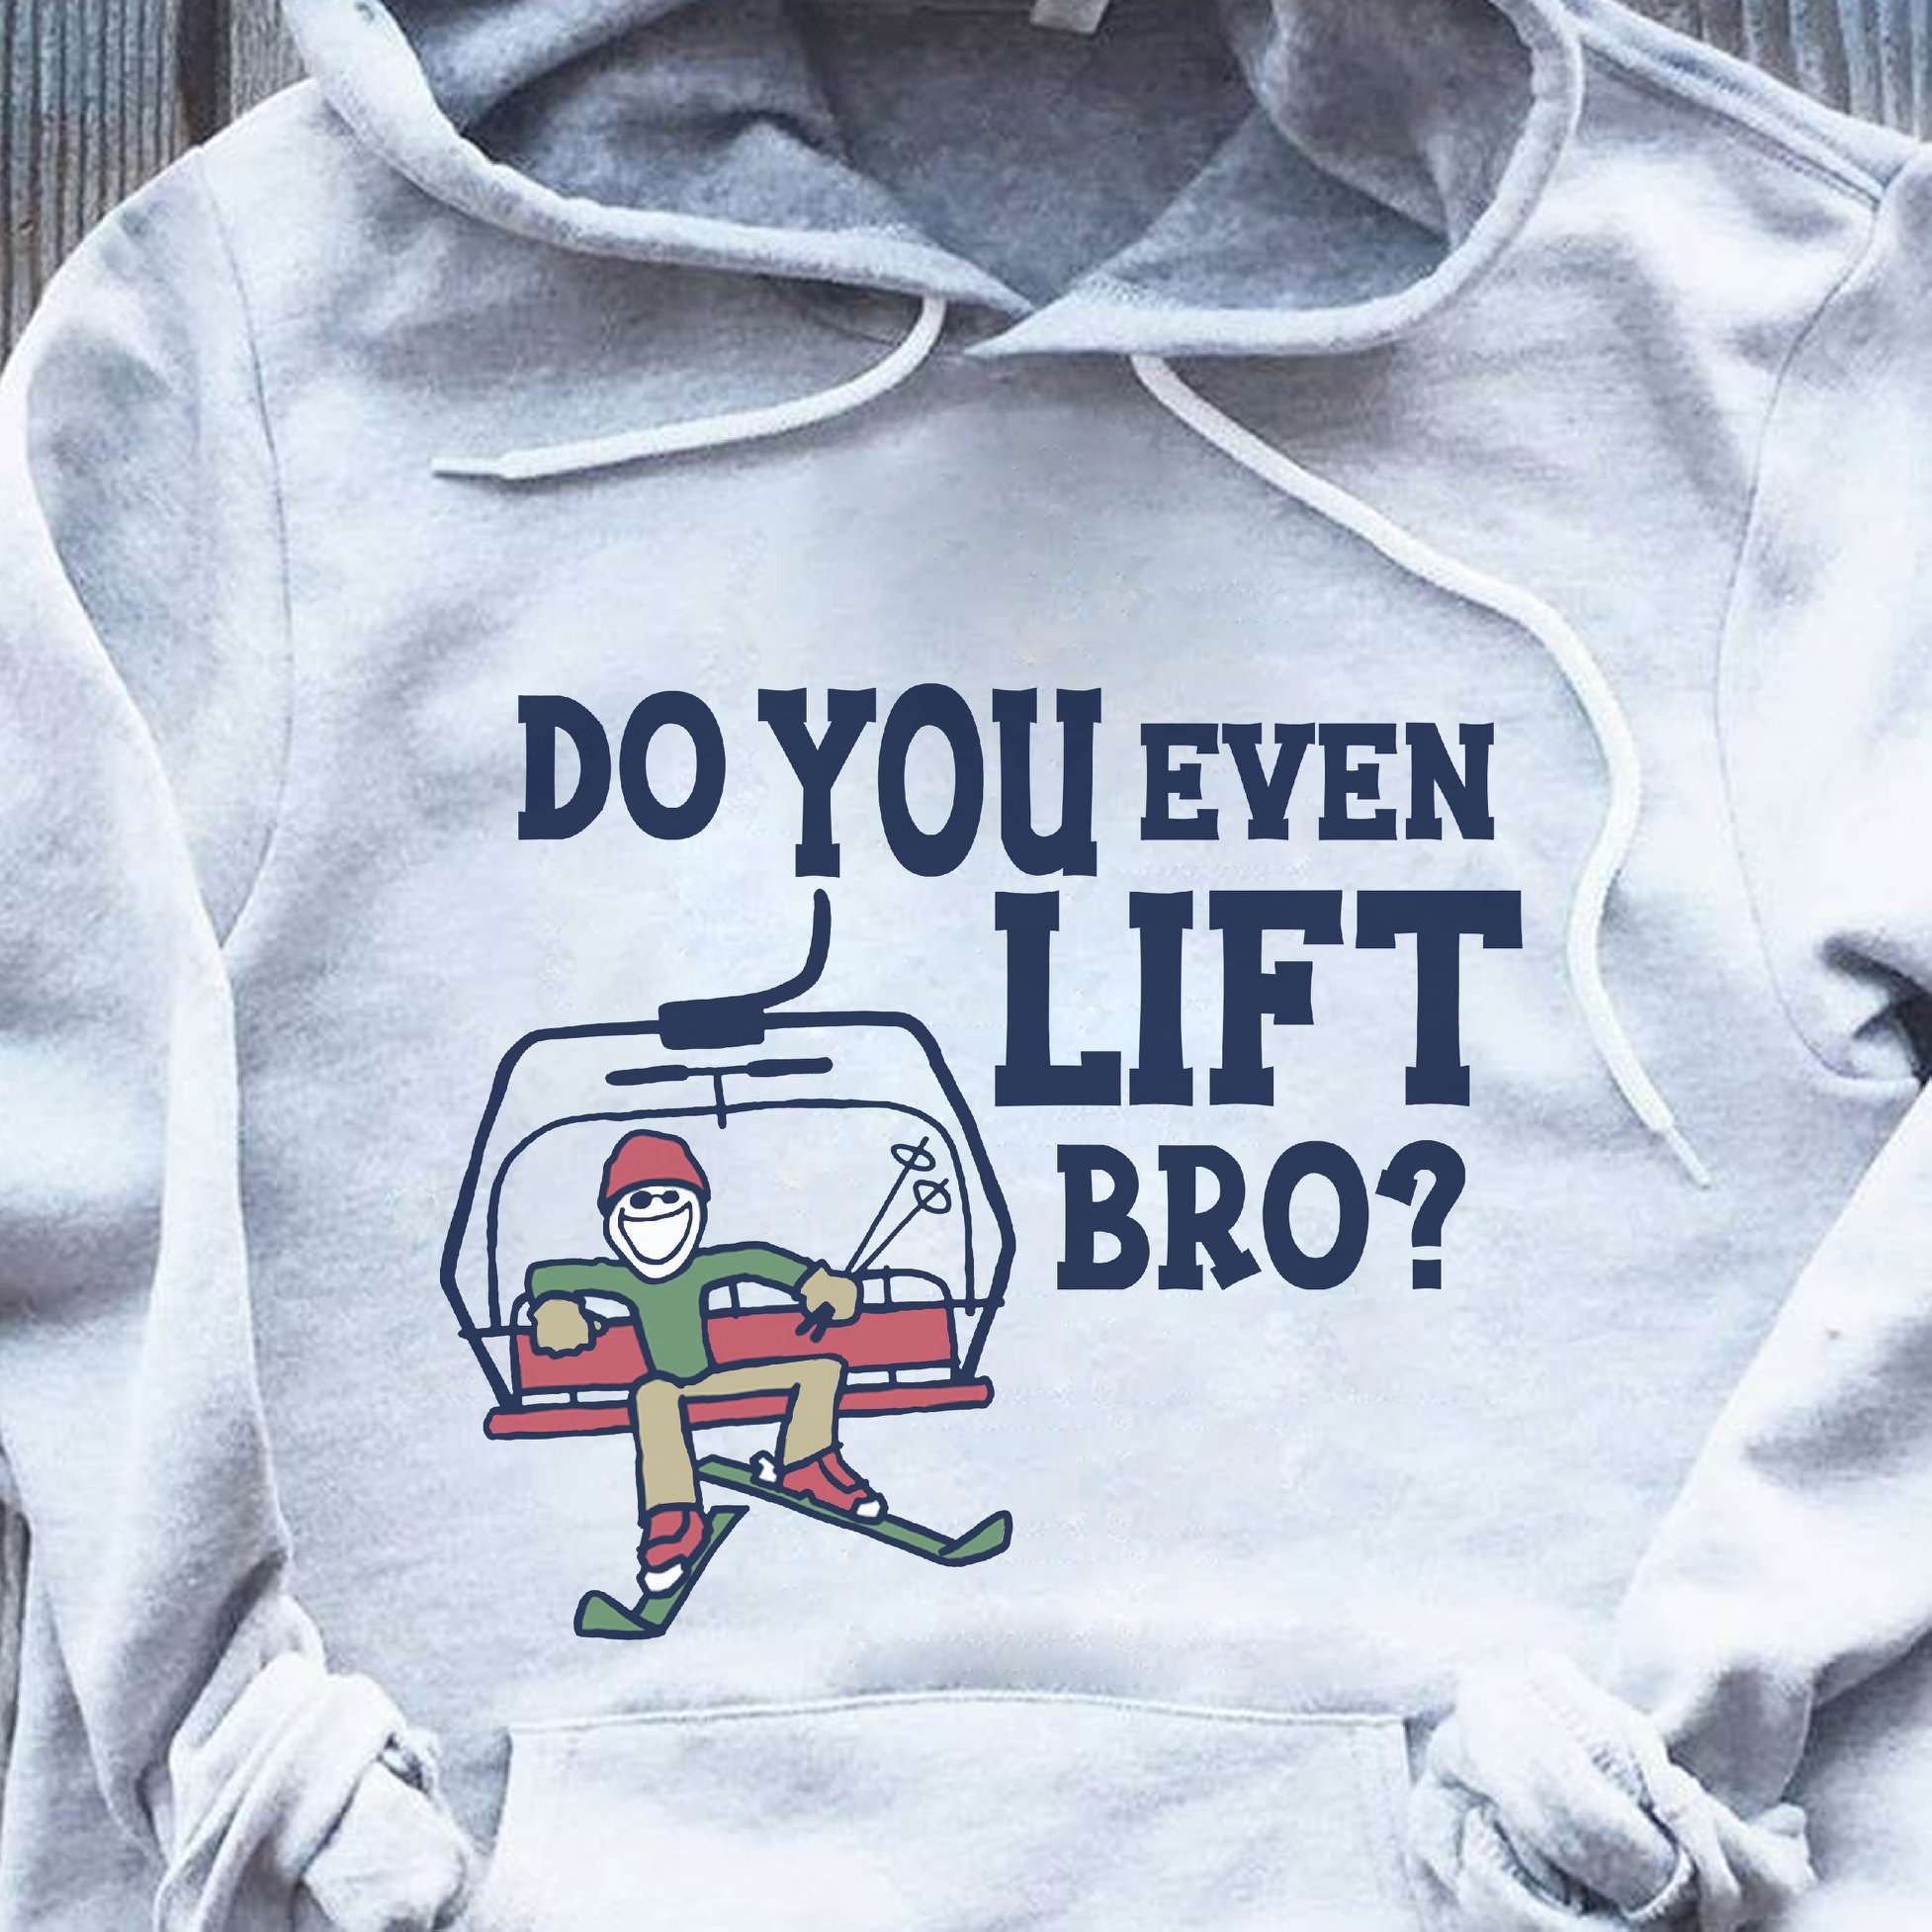 Do you even lift bro - Go skiing man, skiing down the mountain